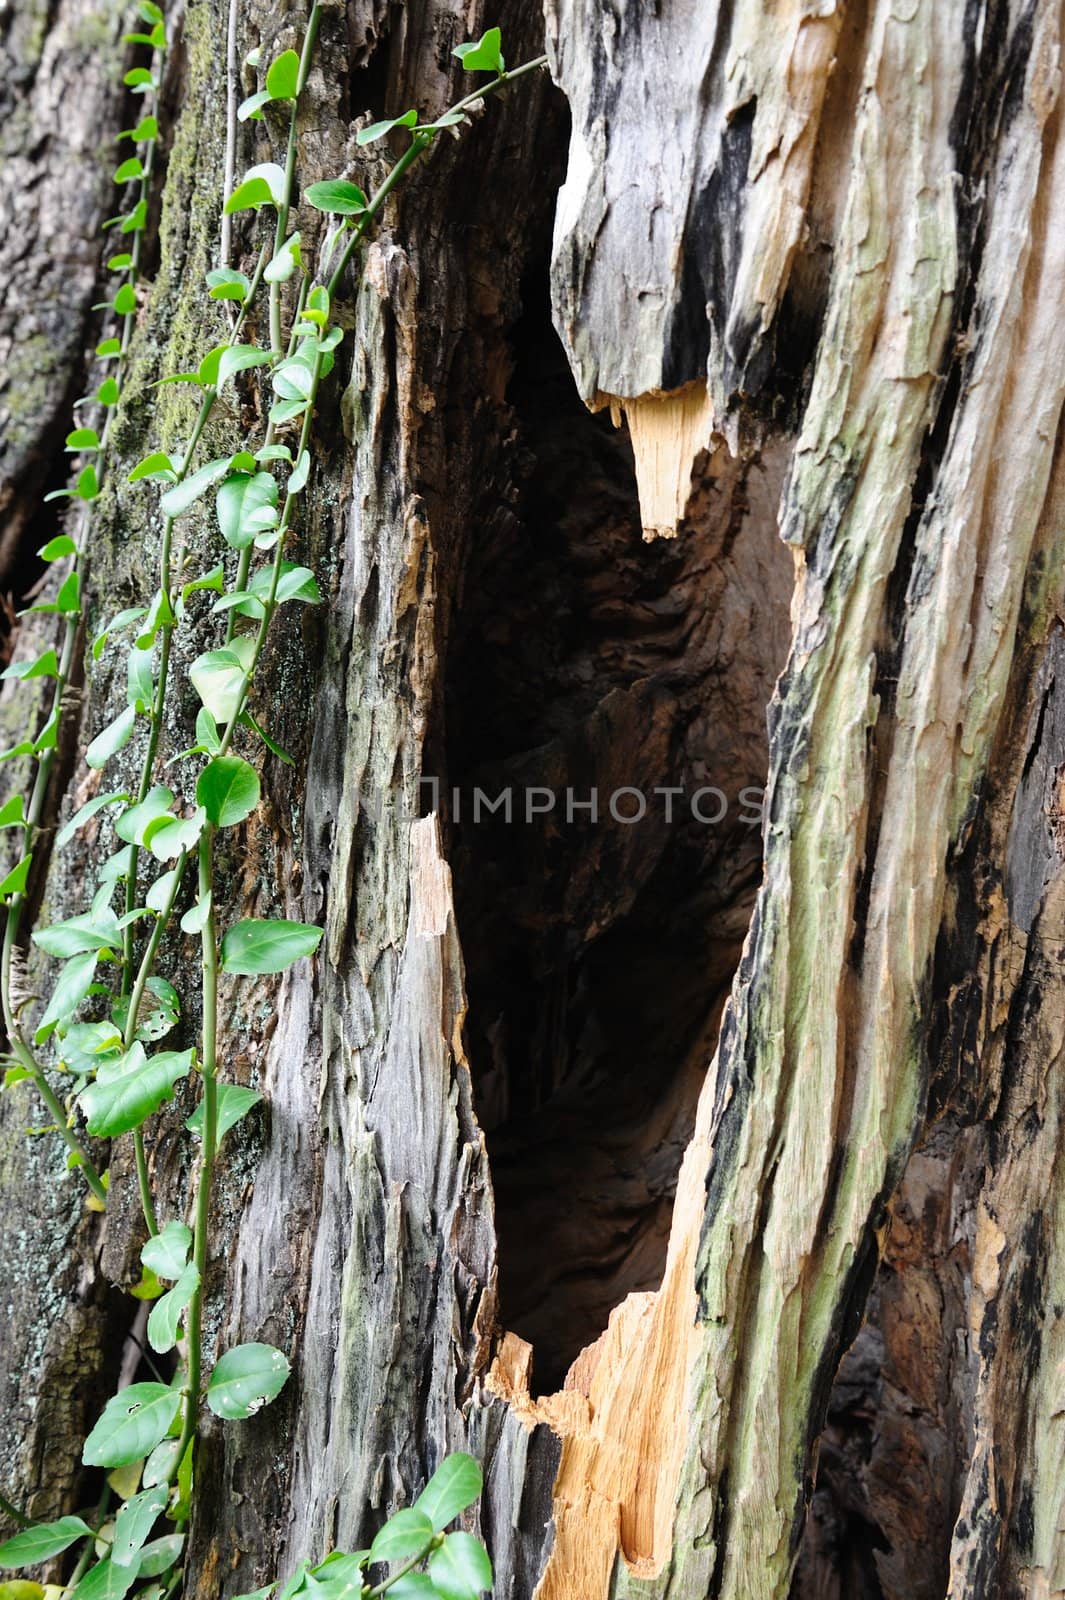 Camphor tree bark by raywoo